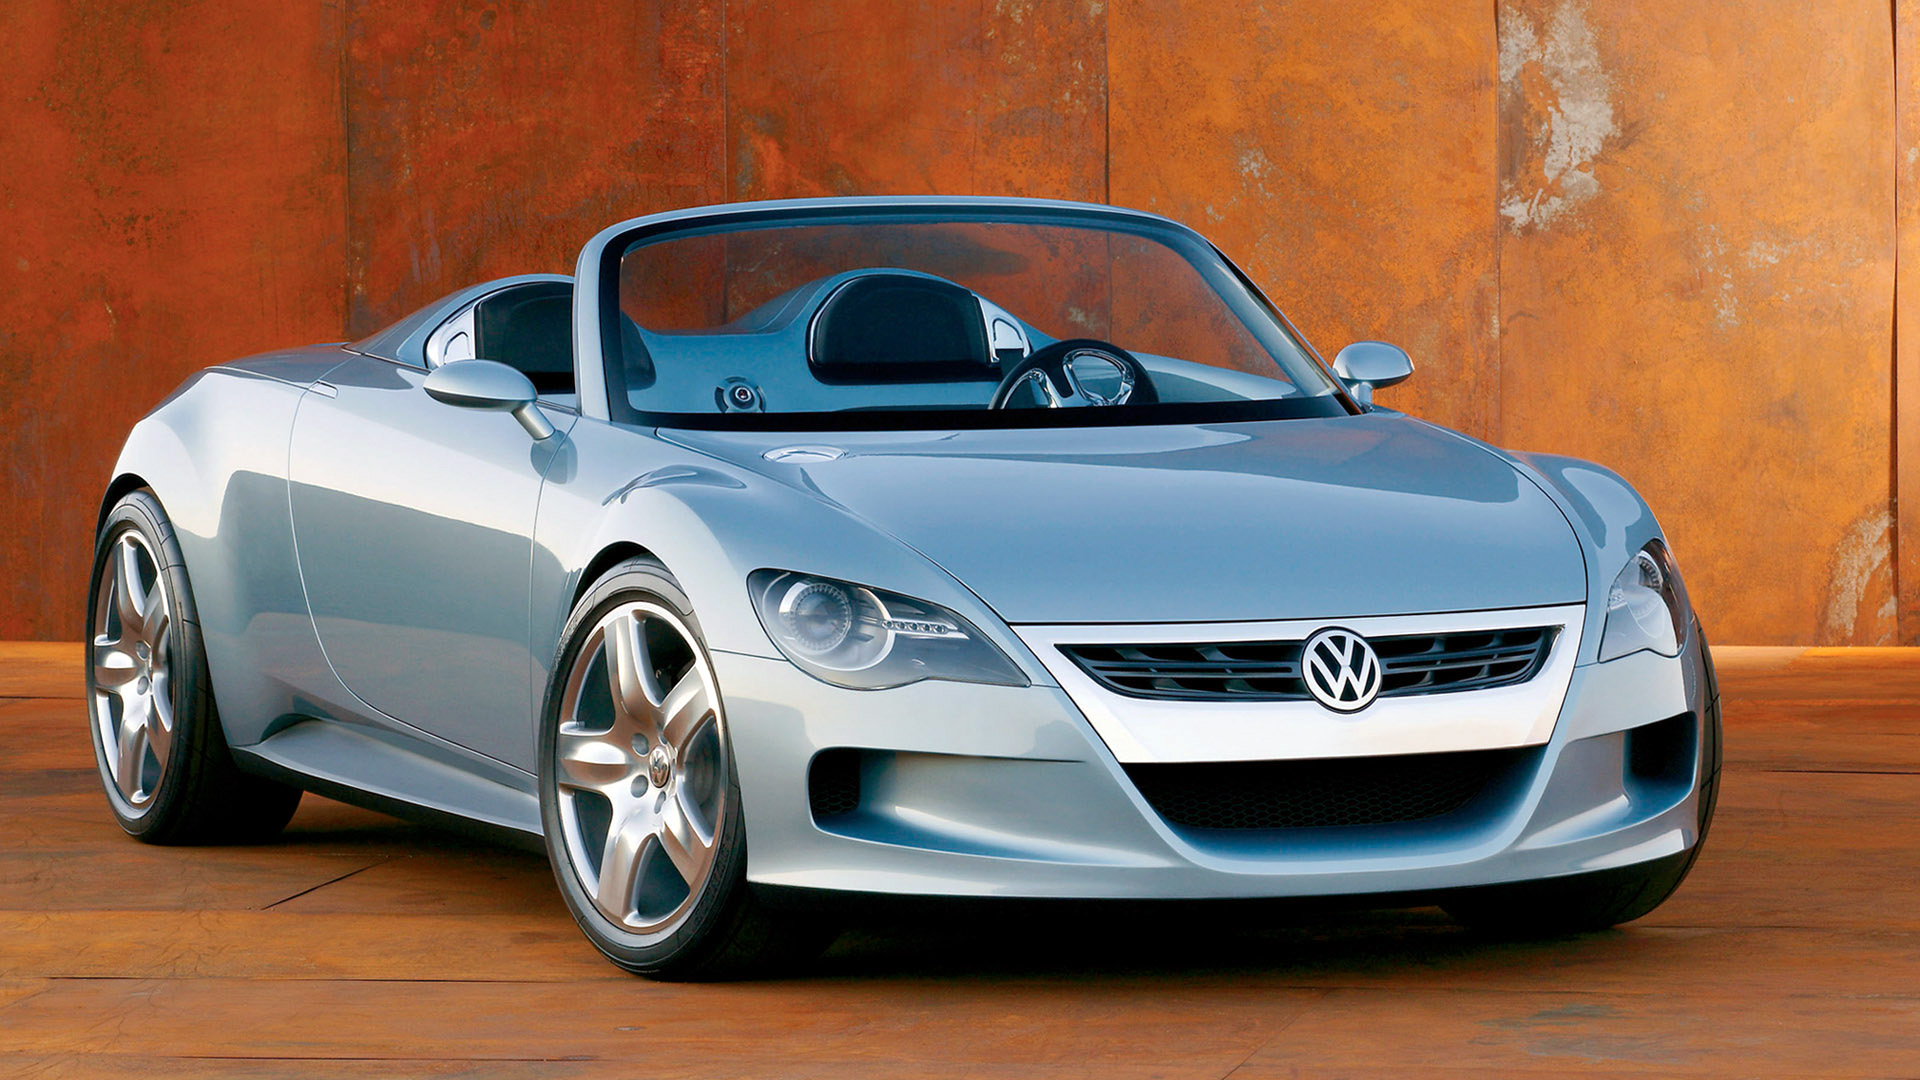  2003 Volkswagen Concept-R Wallpaper.